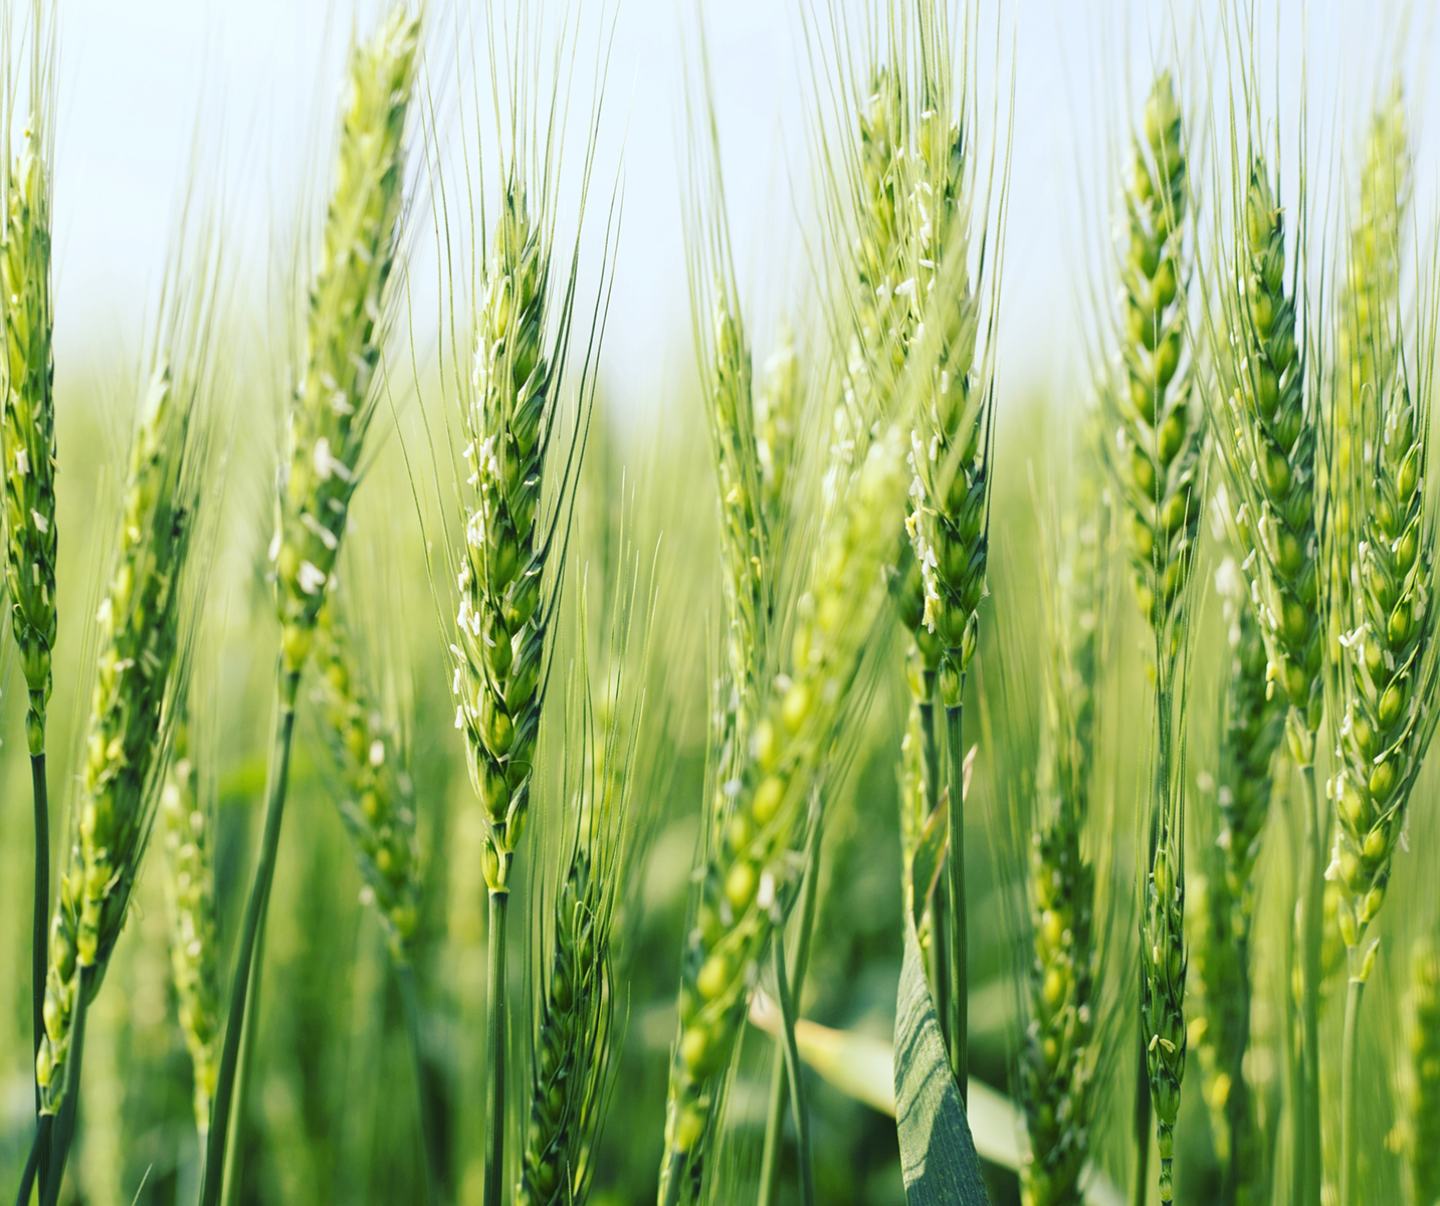 Green wheat crop in field